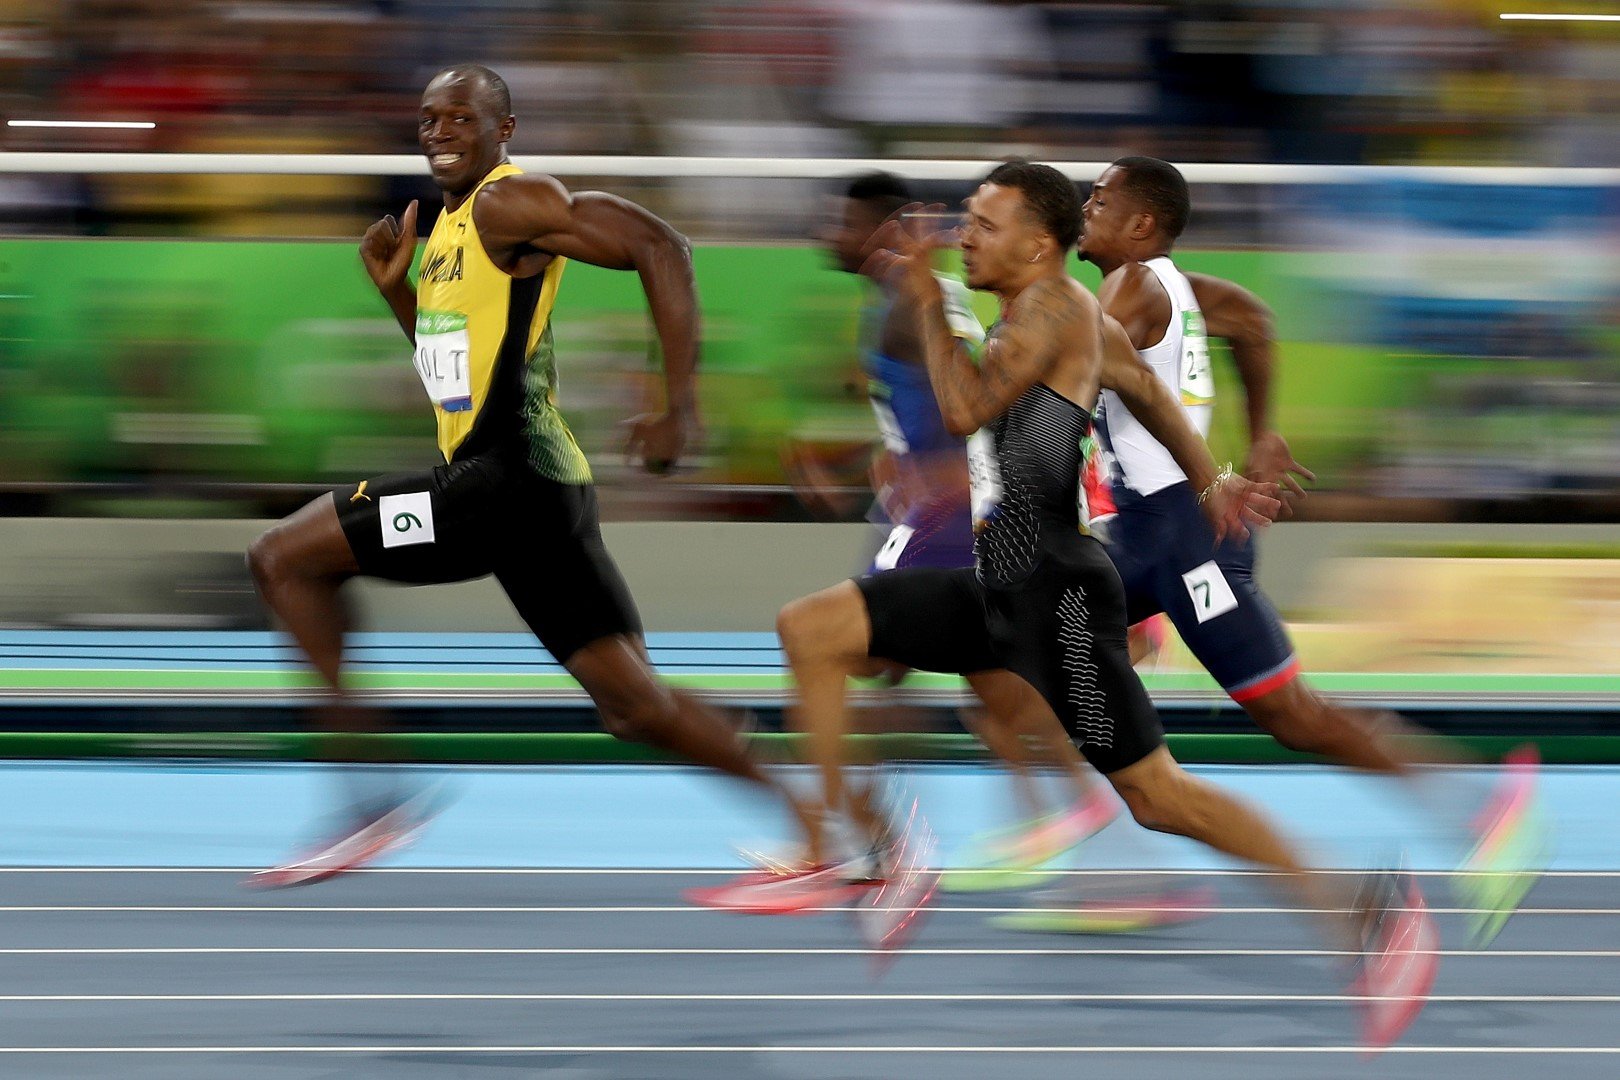 Смеещият се Бог на спринта. В полуфиналната серия на 100-те метра в Рио, по време на Олимпиадата през 2016-а, фотограф улови летящият към финала Юсеин Болт, който се смееше. Или поне - така изглежда от кадъра. Превъзходството на този изумителен атлет в една снимка... Да, това бягане далеч не е най-доброто на Болт, който с 9.58 сек за 100 м остава най-бързият мъж в историята. Но е показателно за това с каква лекота доминираше.